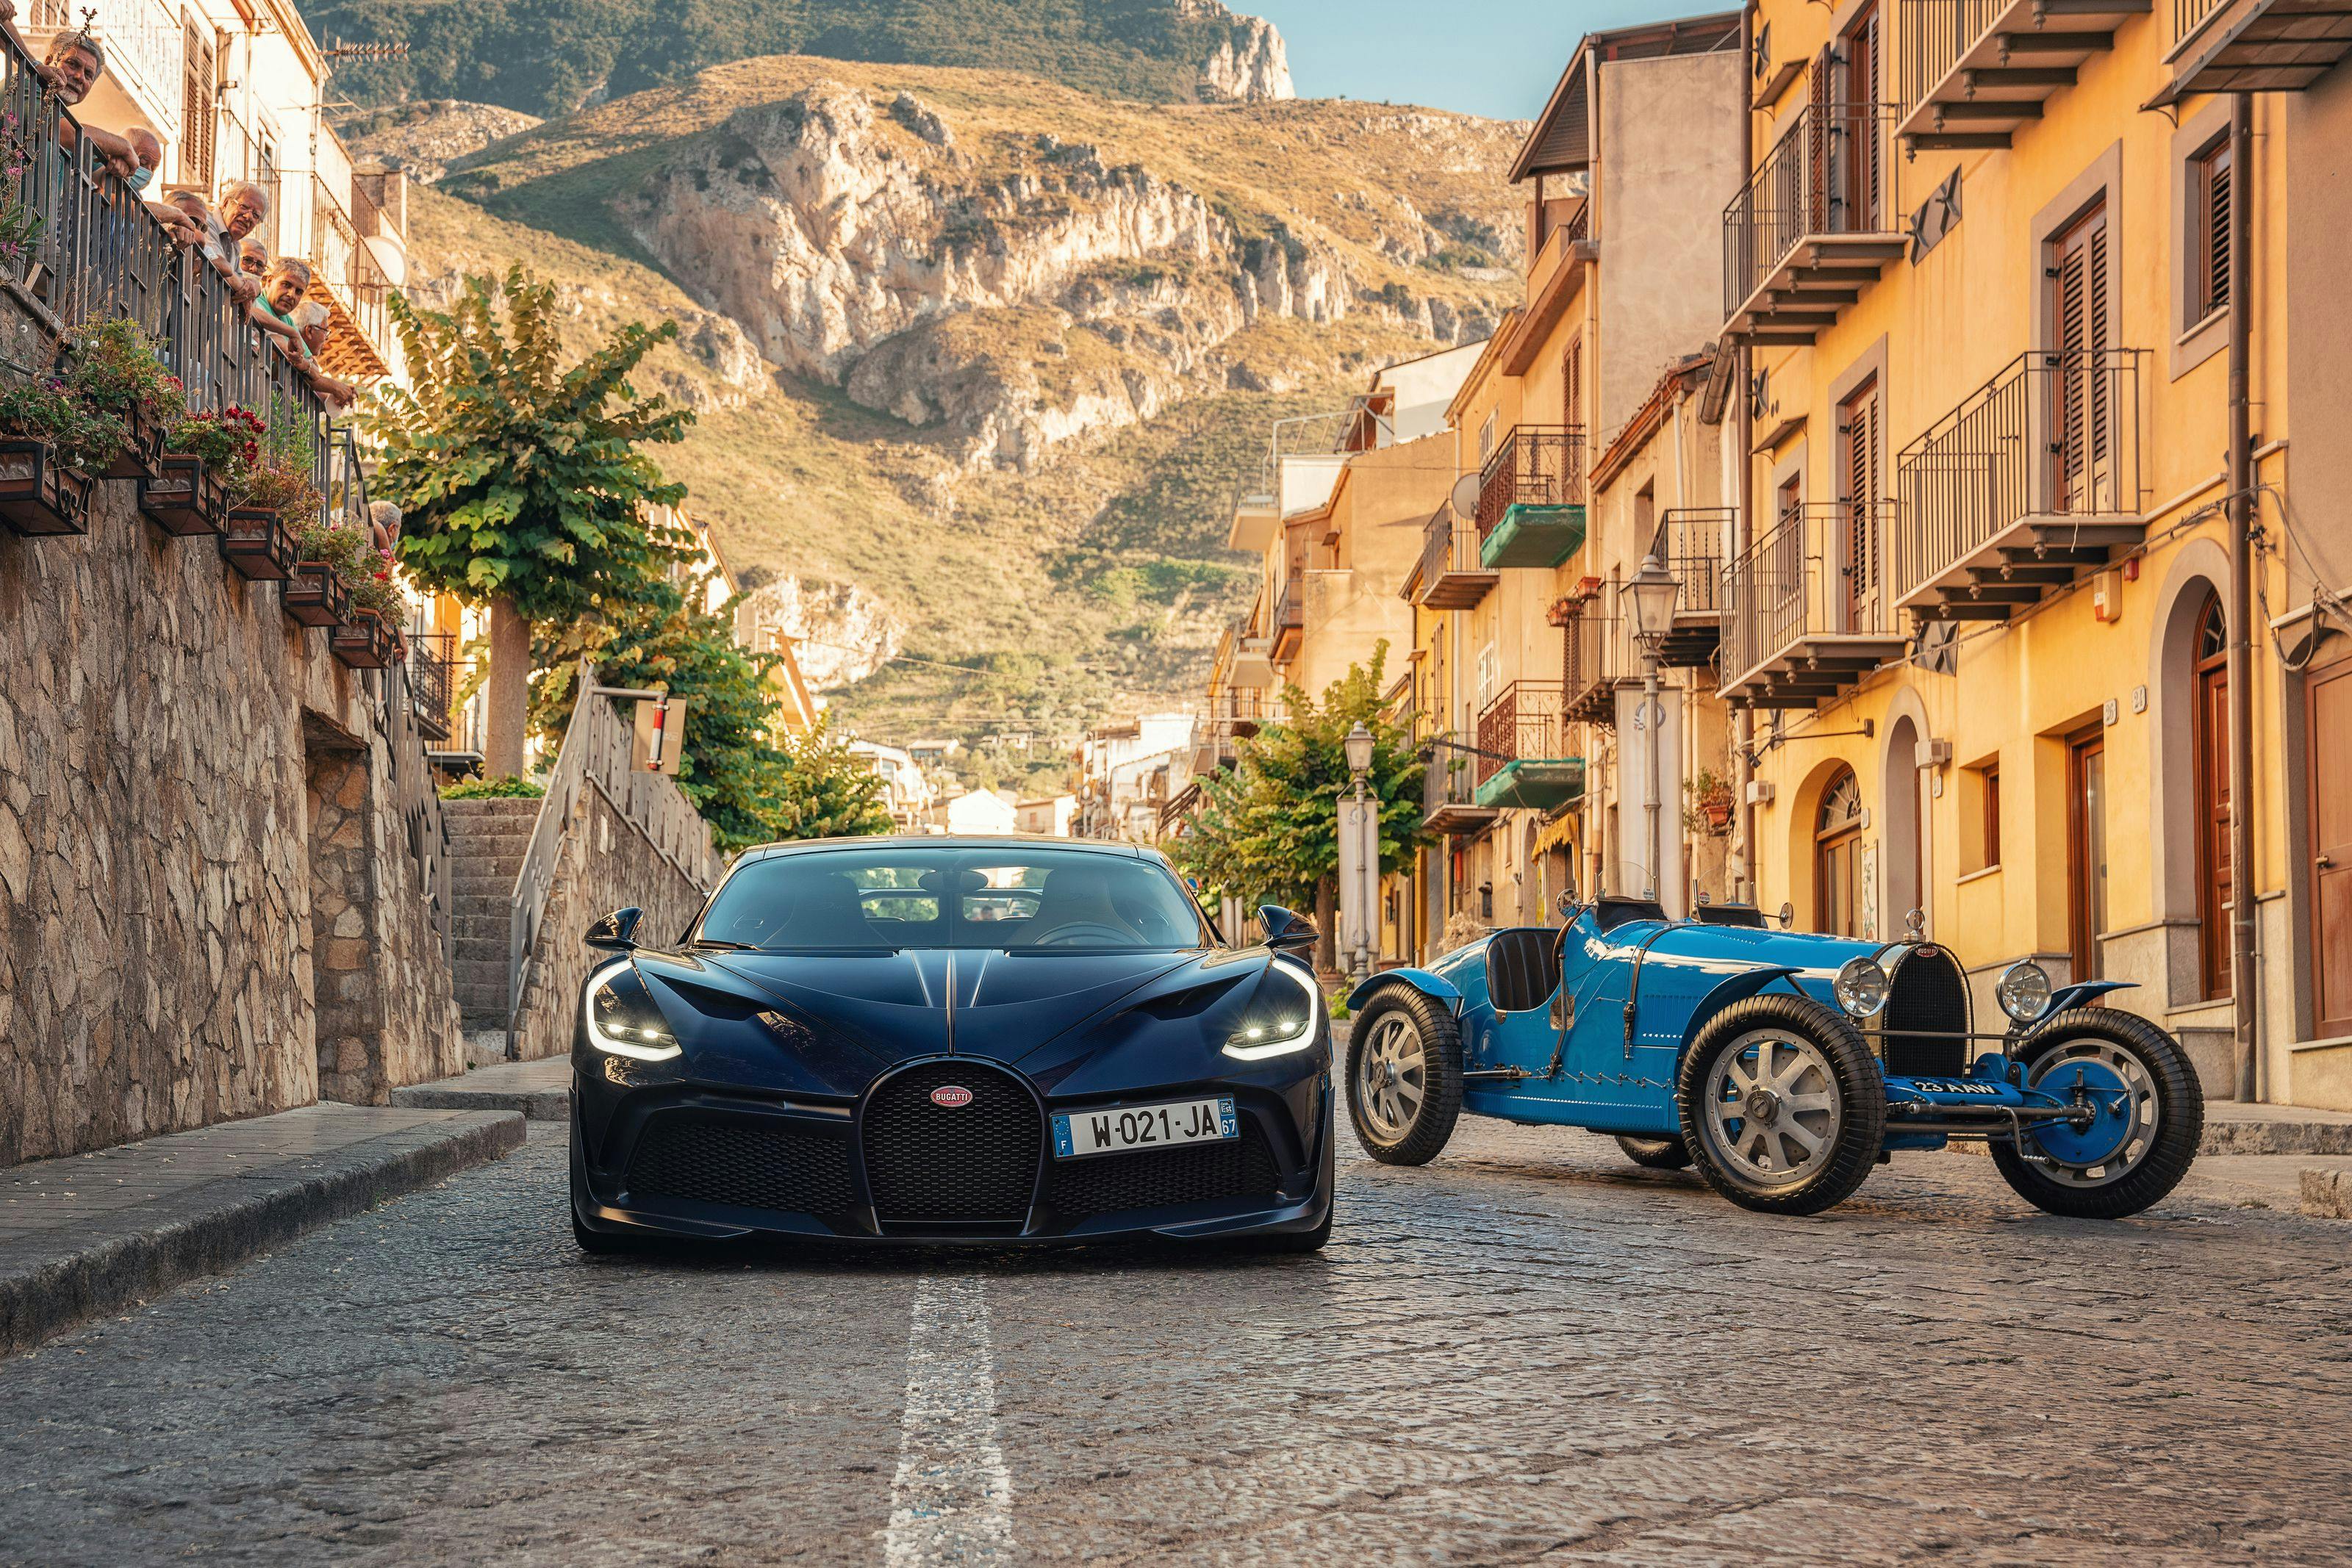 Bugatti Targa Florio – Following in Albert Divo’s footsteps in the Bugatti Divo